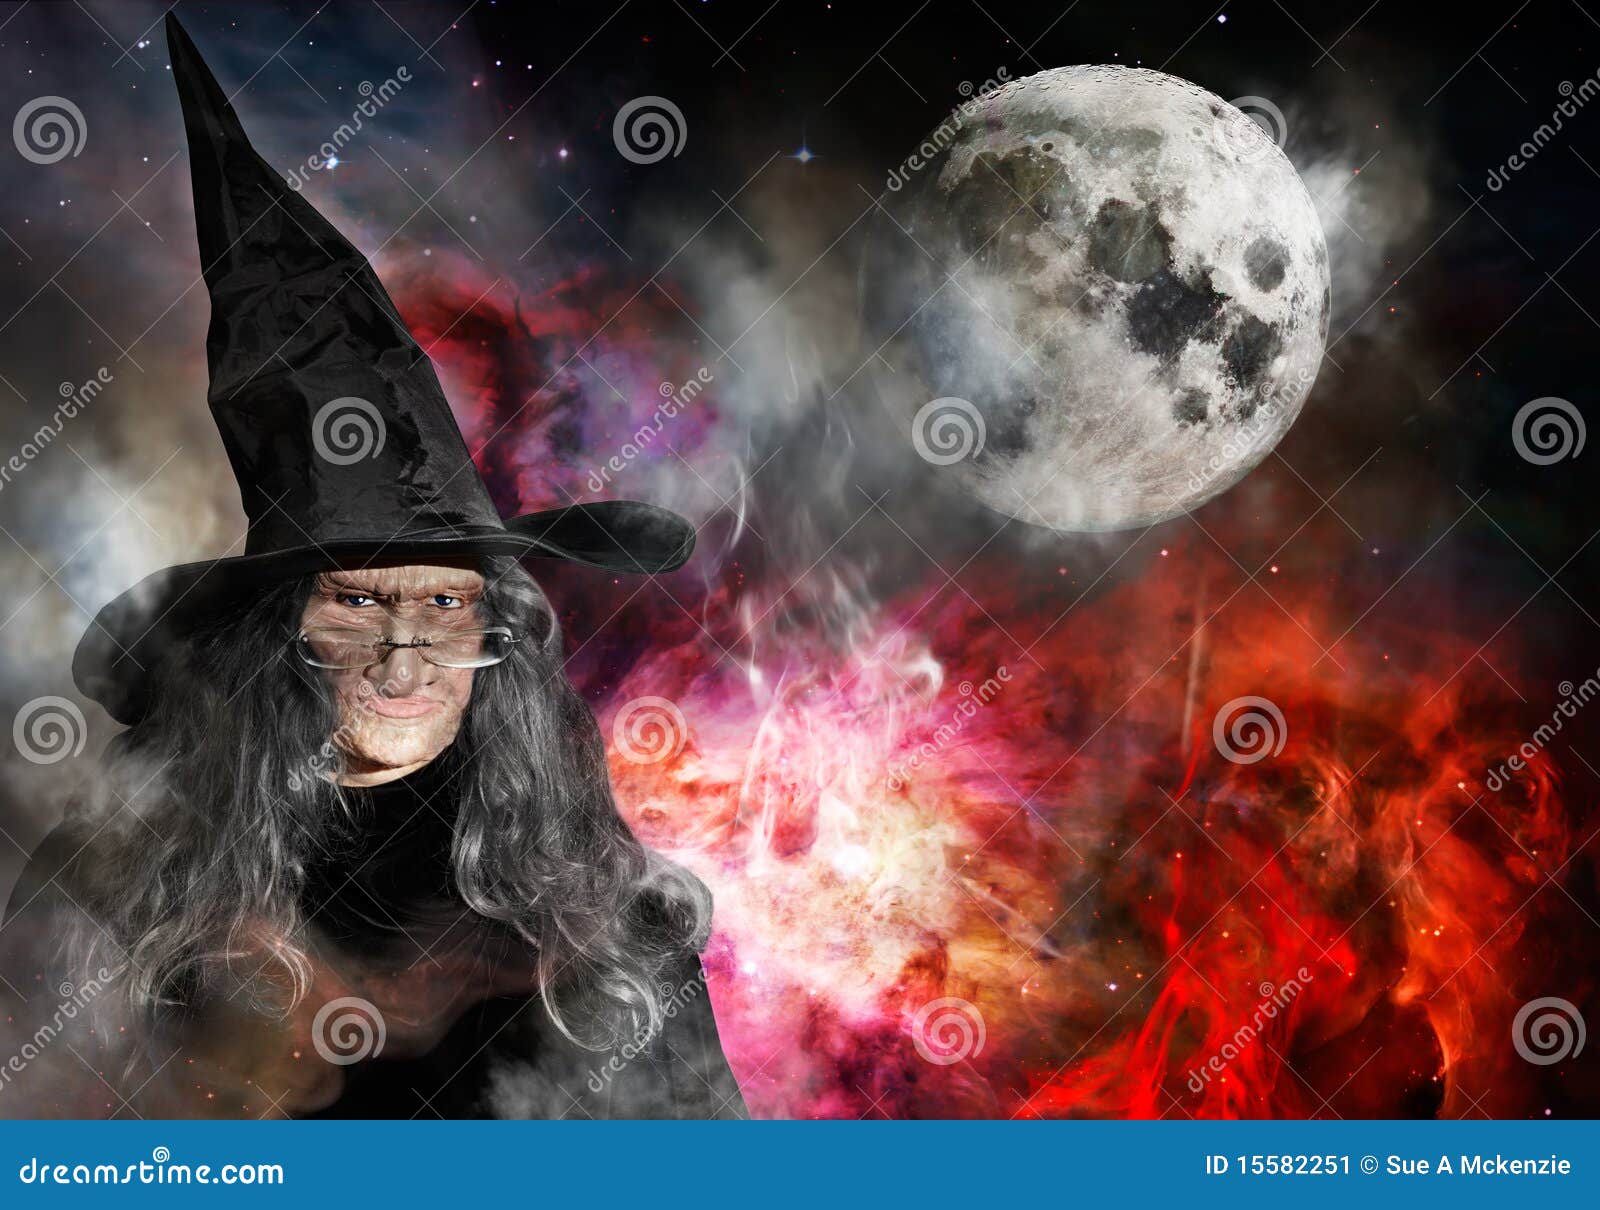 370 melhor ideia de lua Crescente  bruxas, fotos de bruxas lindas, bruxa  bela